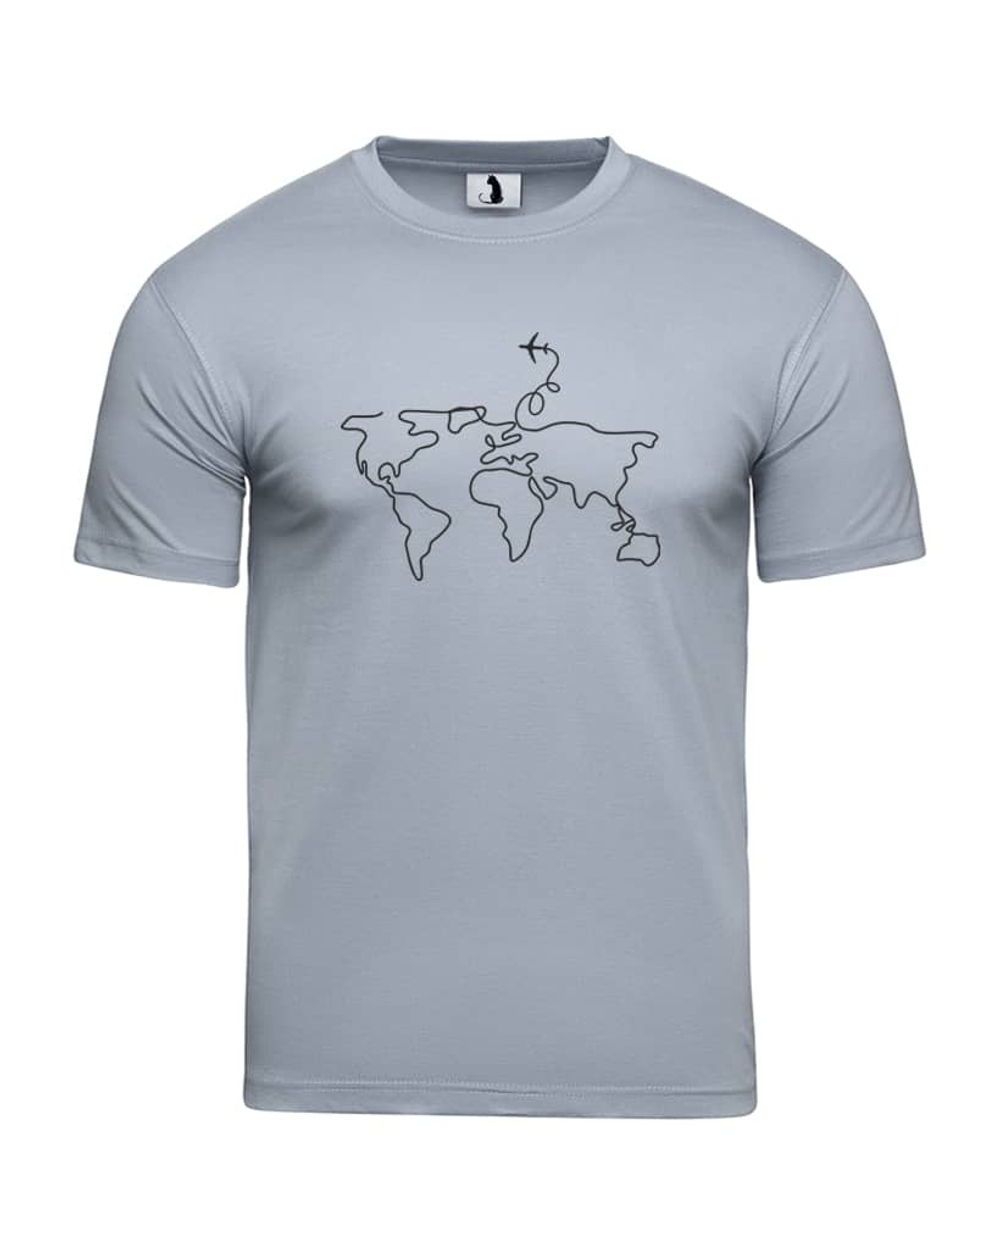 Футболка с самолетом Карта мира классическая серая